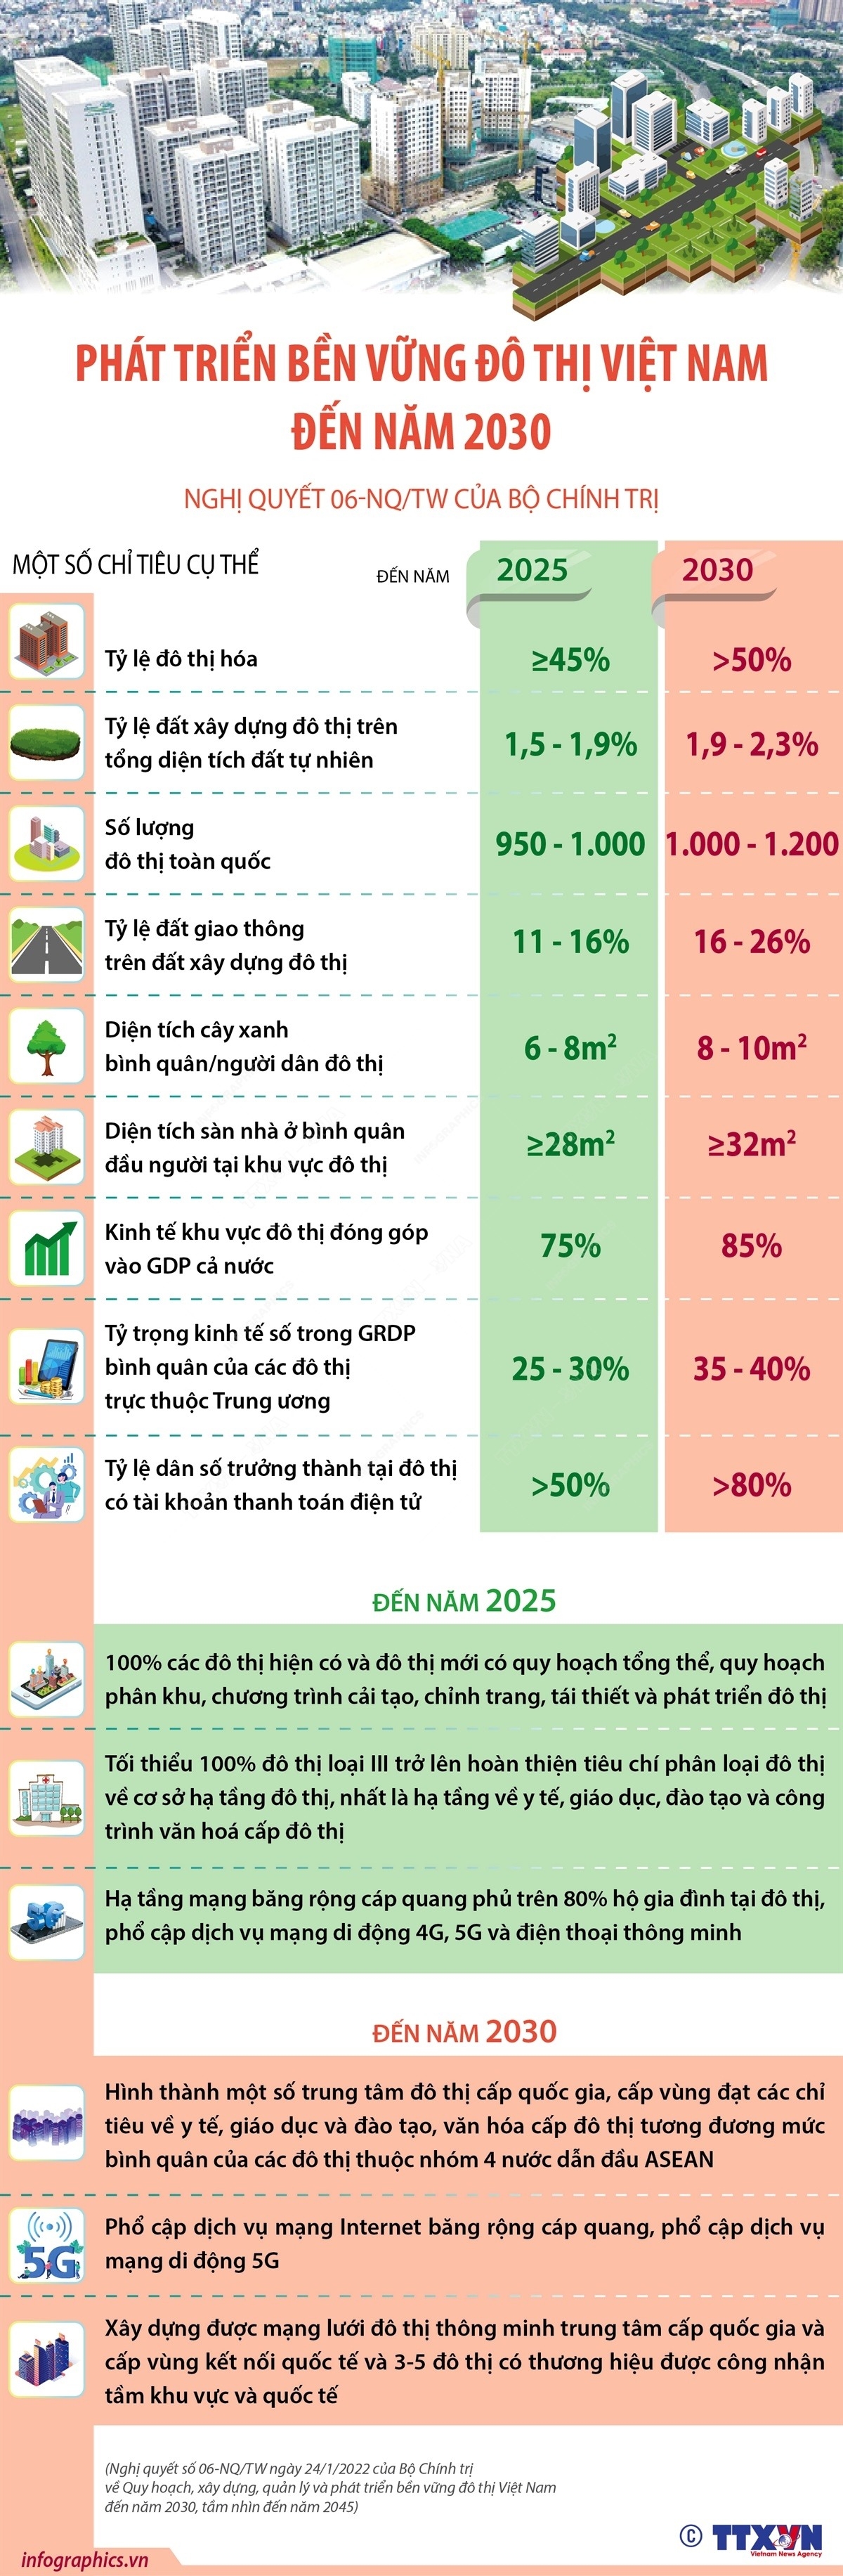 Phát triển bền vững đô thị Việt Nam đến năm 2030